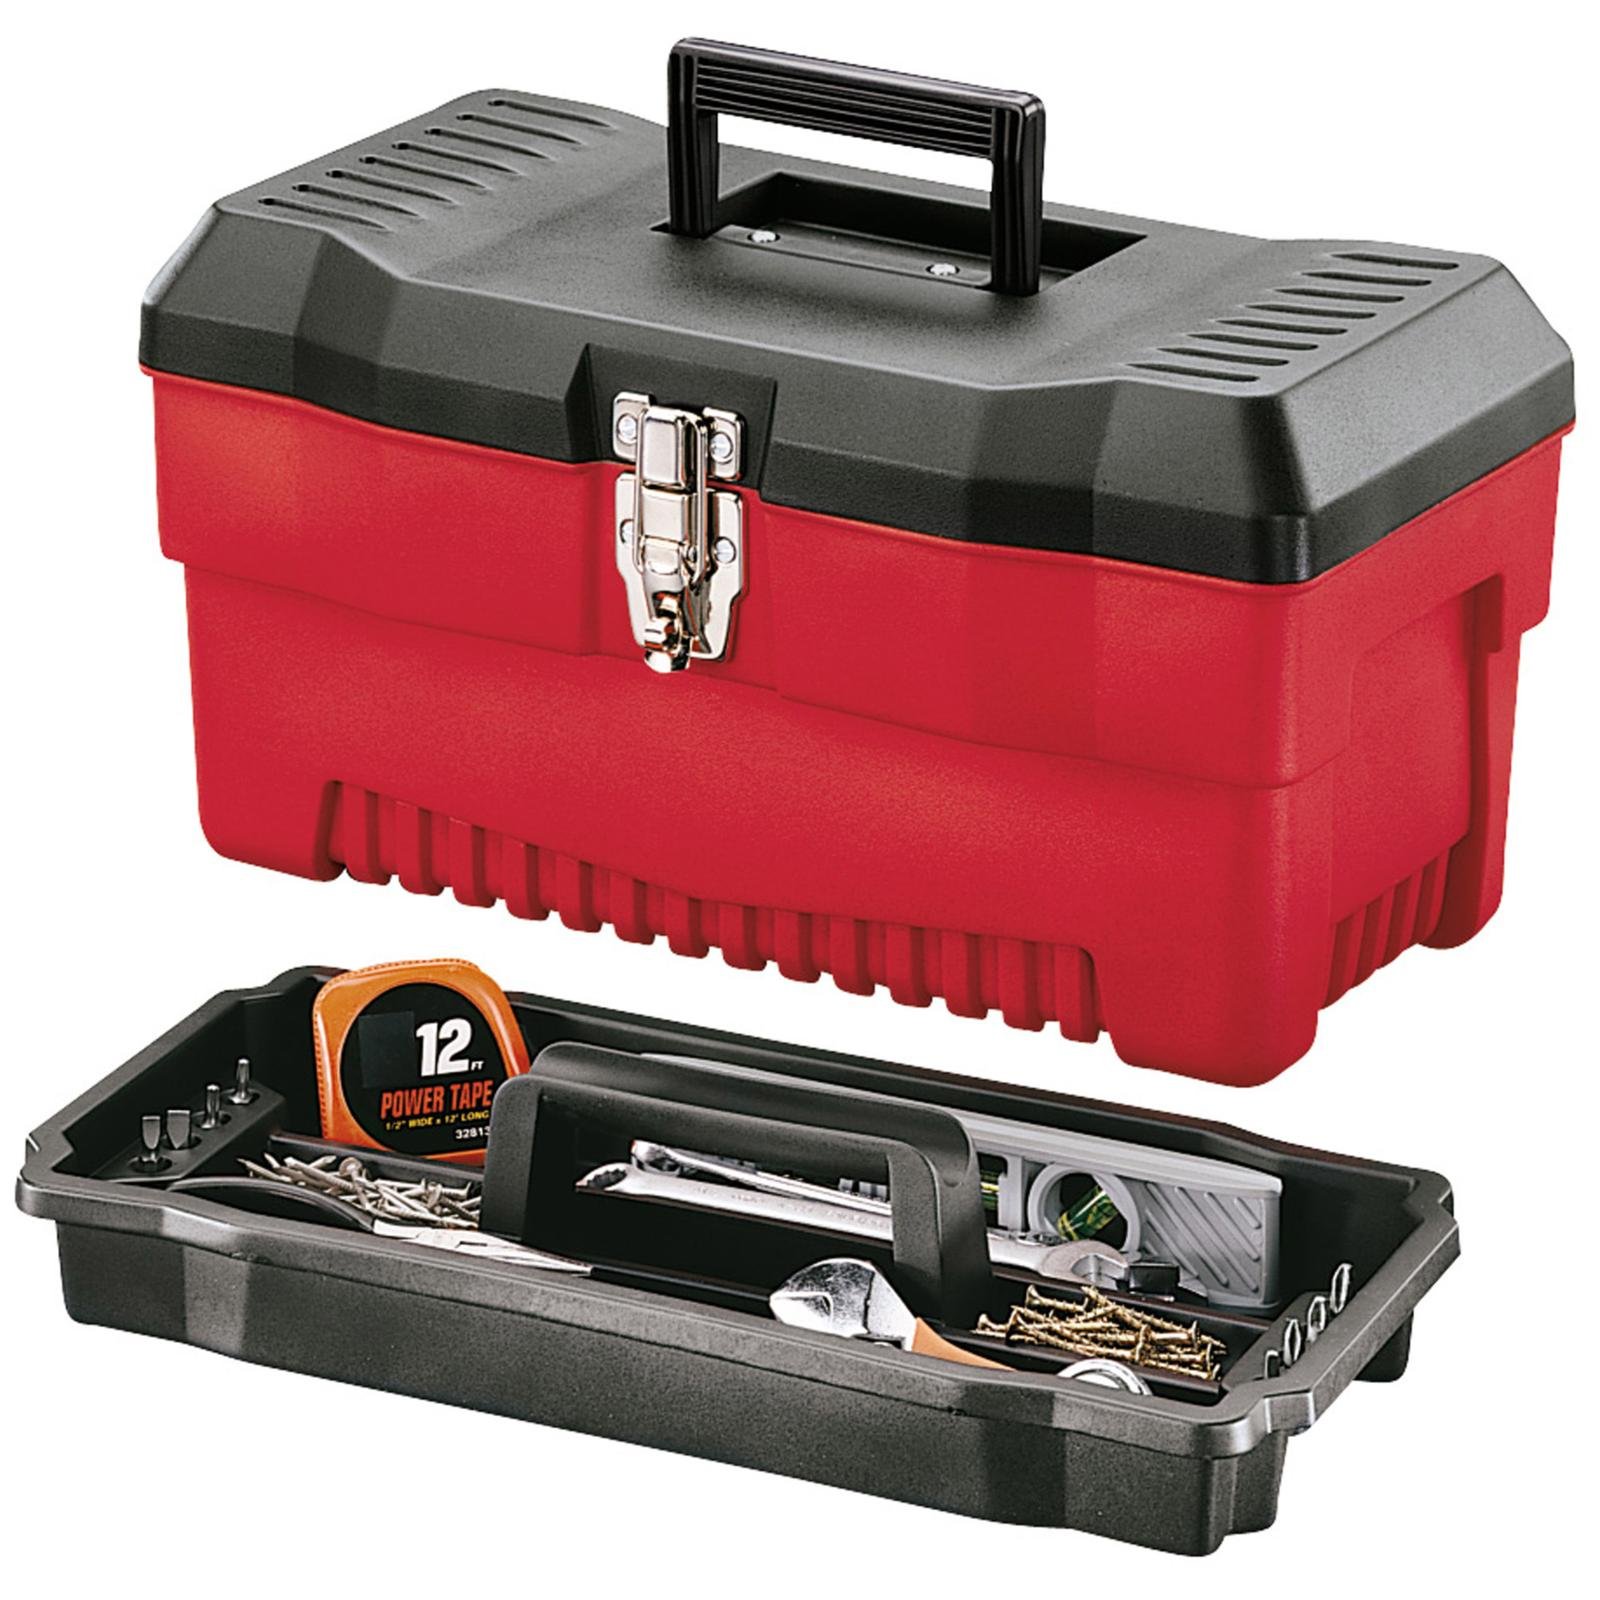 Toolbox 1. Stuff Box ящик для инструментов. Toolbox инструменты. Тулбокс для инструментов. Тулбокс для ножей.